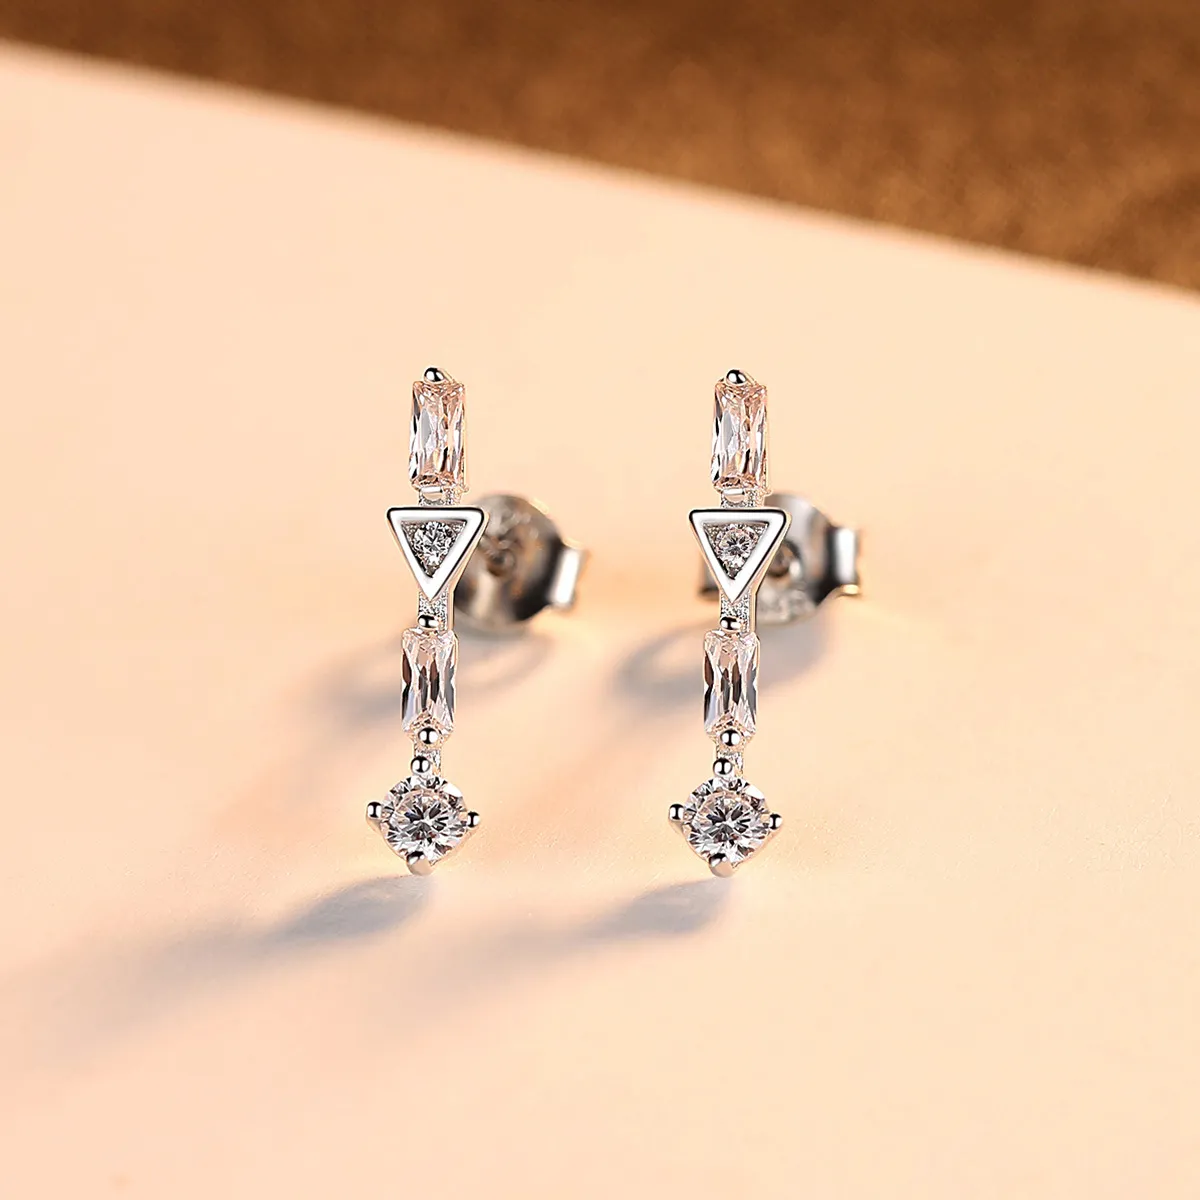 New Micro Set Zircon S925 Silver Geometry Stud Earrings Jewelry Charm Women Shiny 3A Zircon Temperament Earrings for Women Wedding Party Valentine's Day Gift SPC